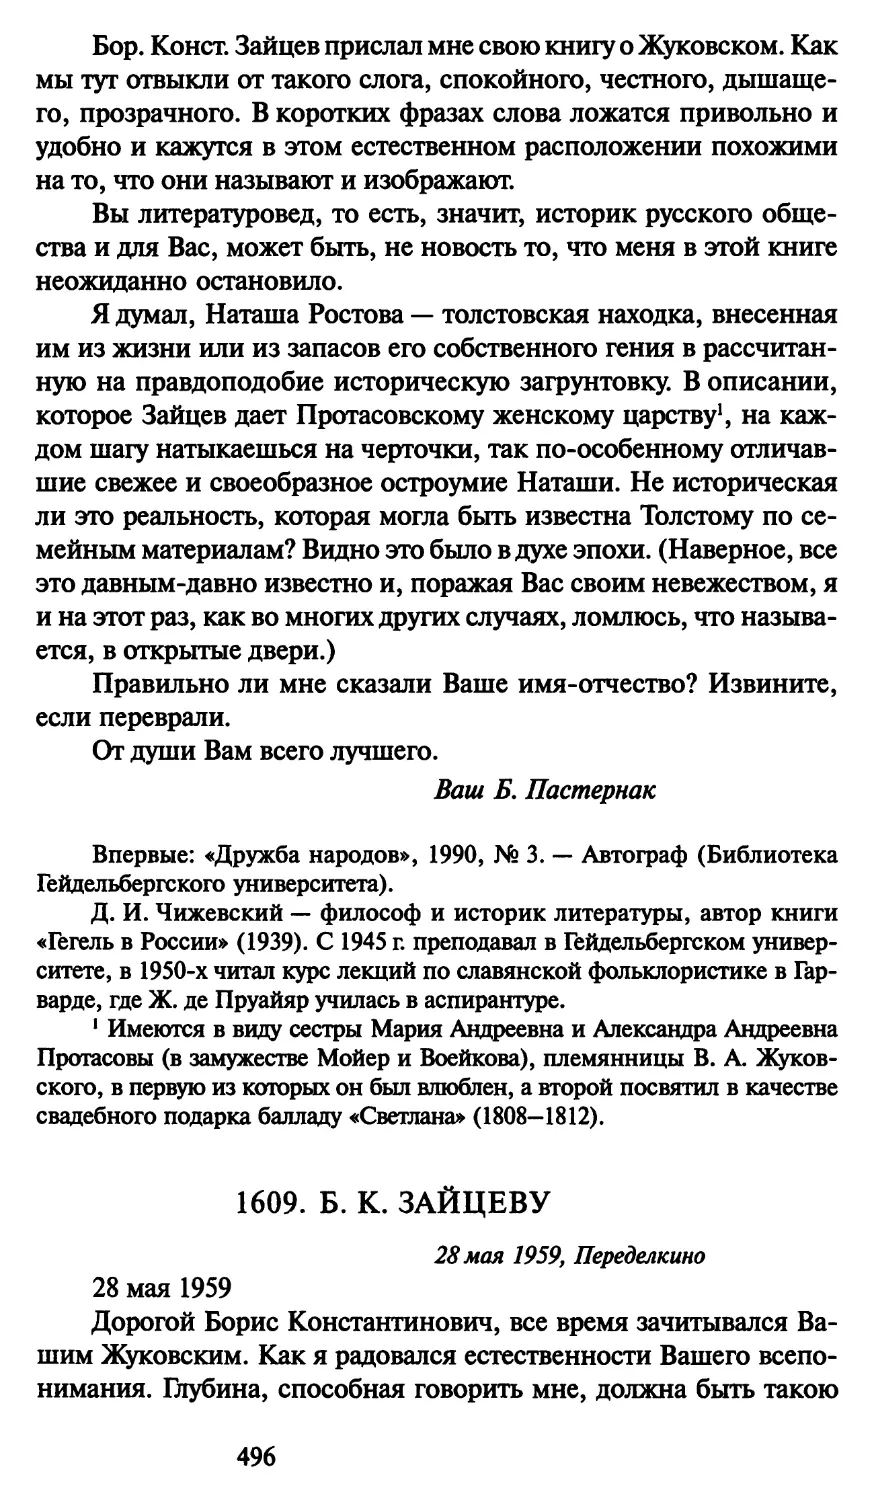 1609. Б. К. Зайцеву 28 мая 1959